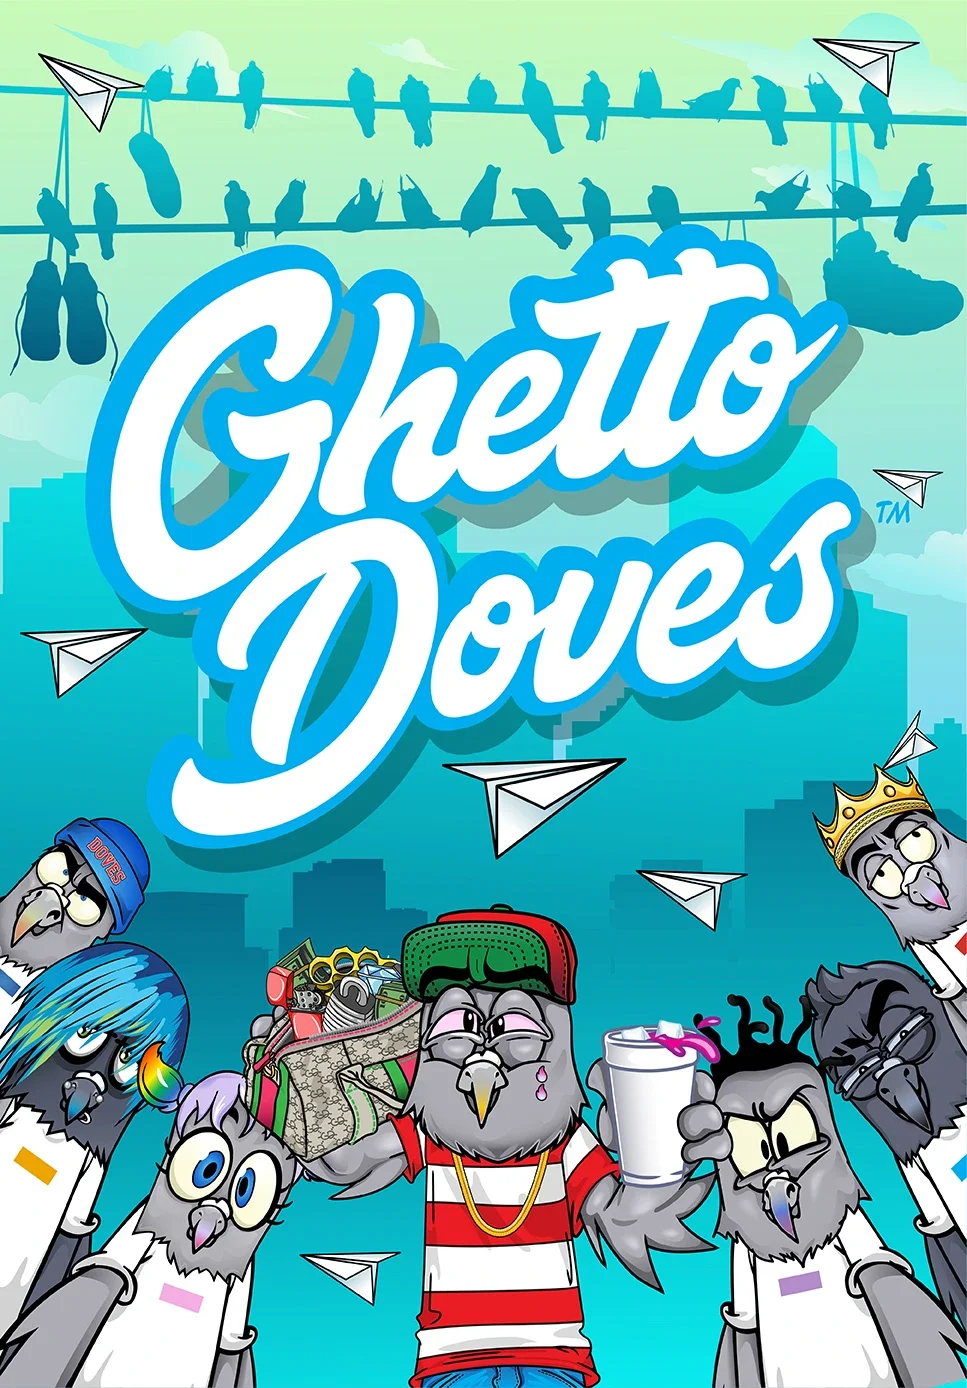 Ghetto Doves